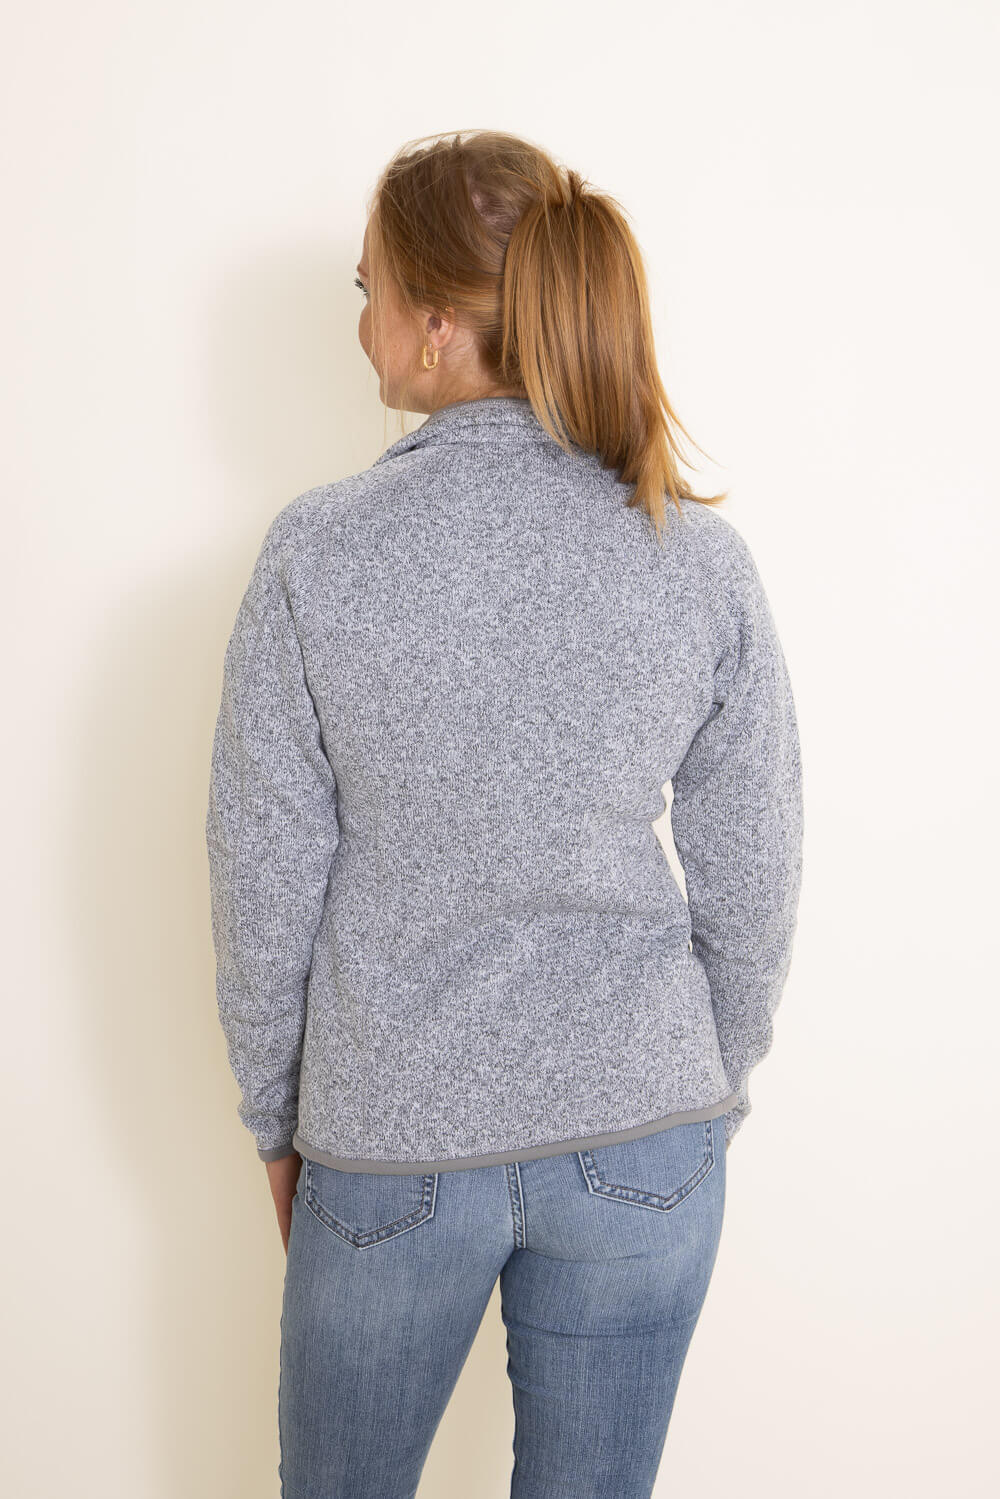 Better Sweater Fleece Jacket - Women's